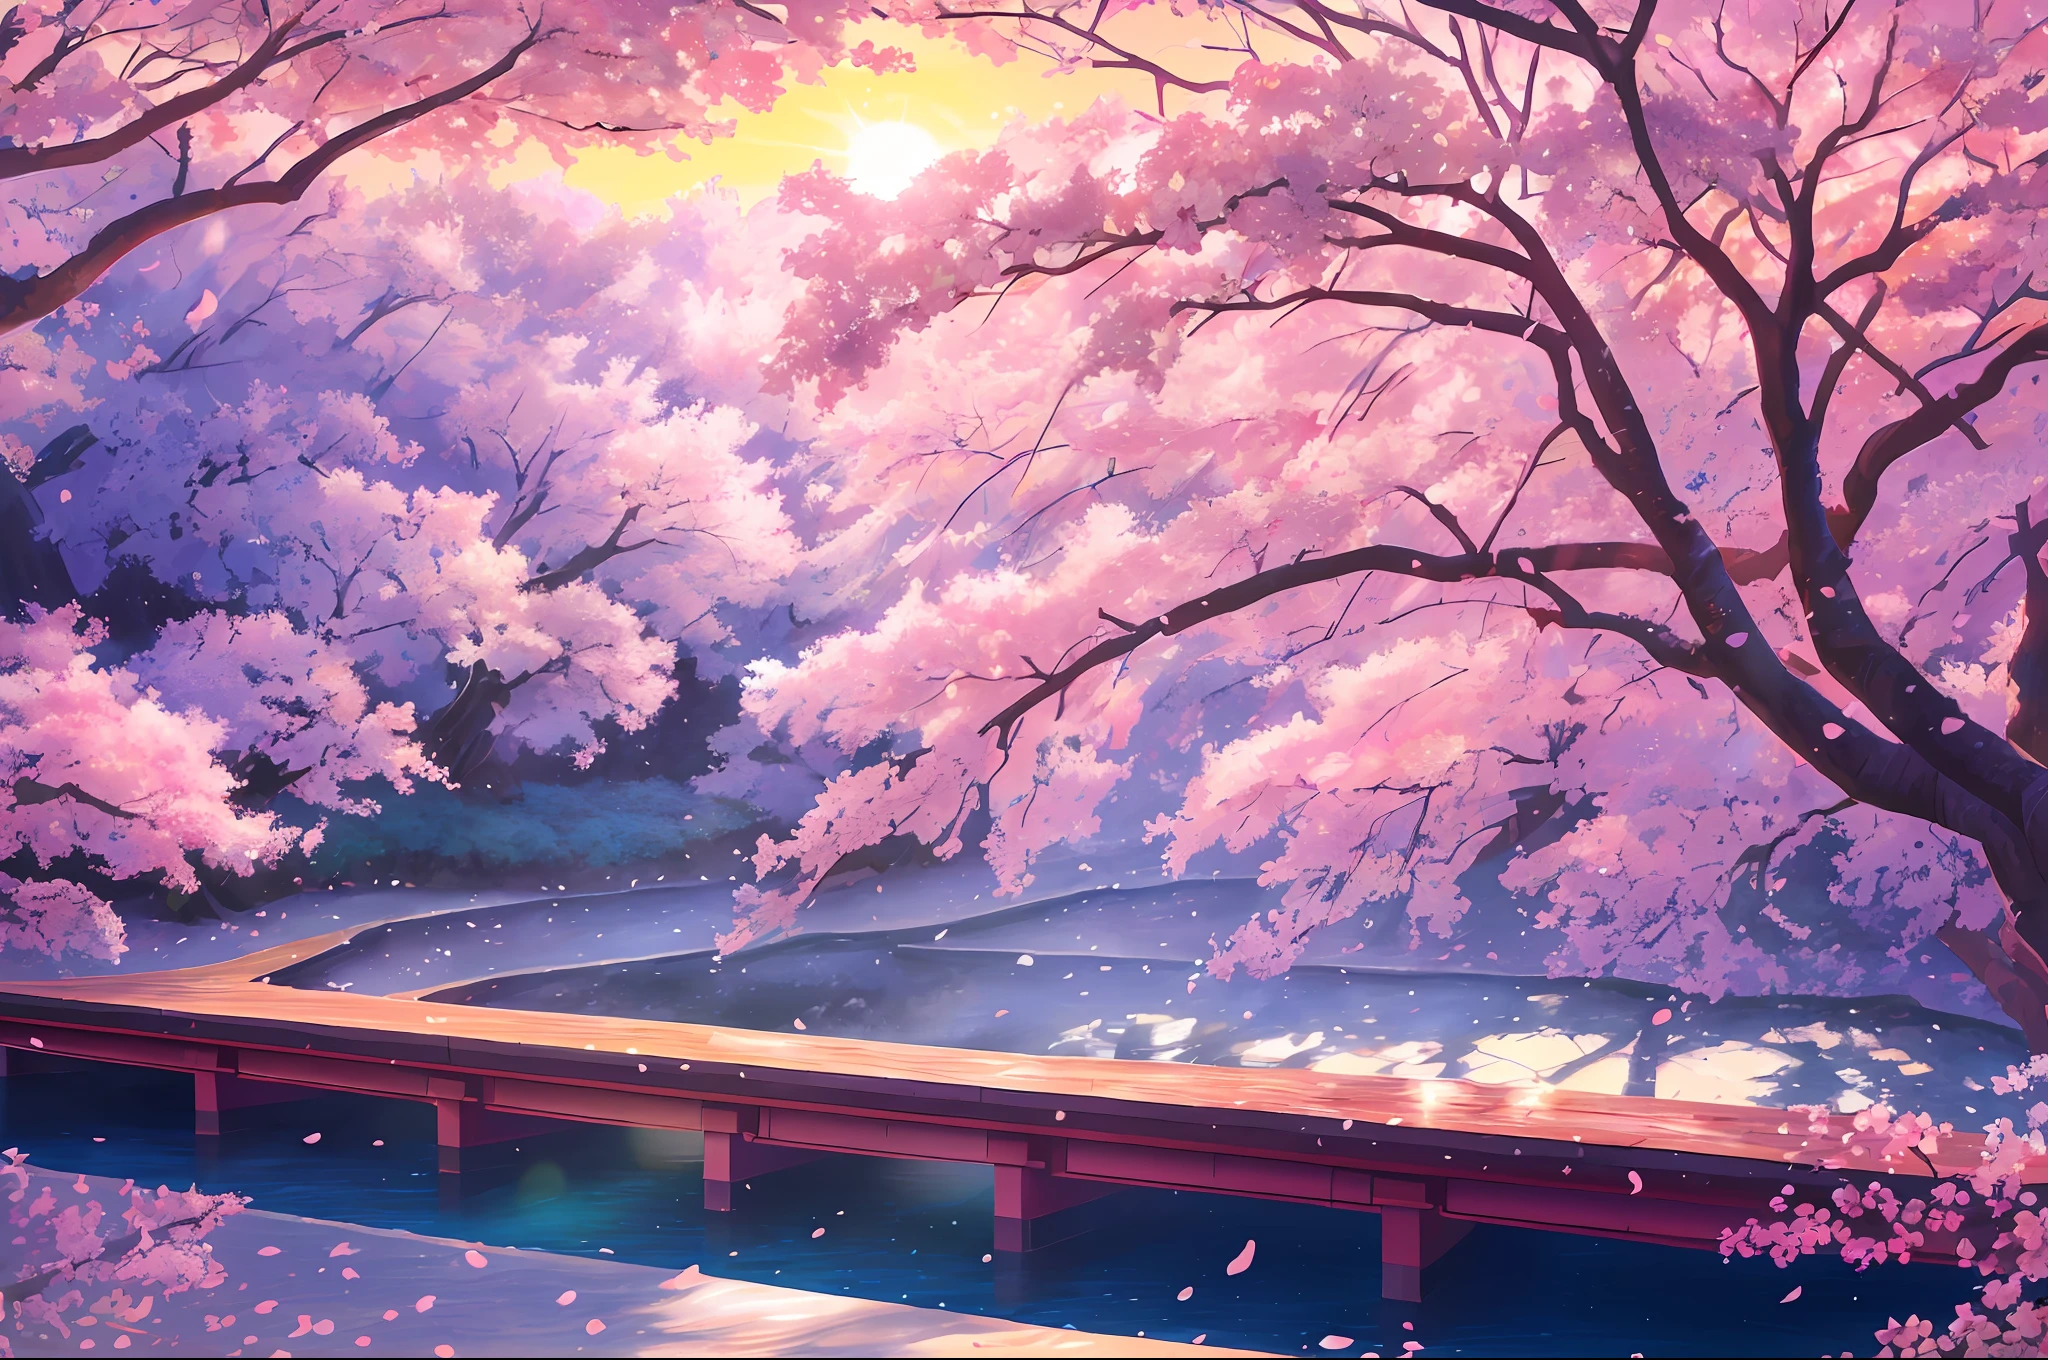 (Photoréaliste:1.2), éclaircissement：Hidenori Matsubara, Un paysage fantastique et vibrant, pétales de fleurs de cerisier tombant, Illuminé par un coucher de soleil chaleureux et invitant, Ombres et textures douces, et une lueur subtile